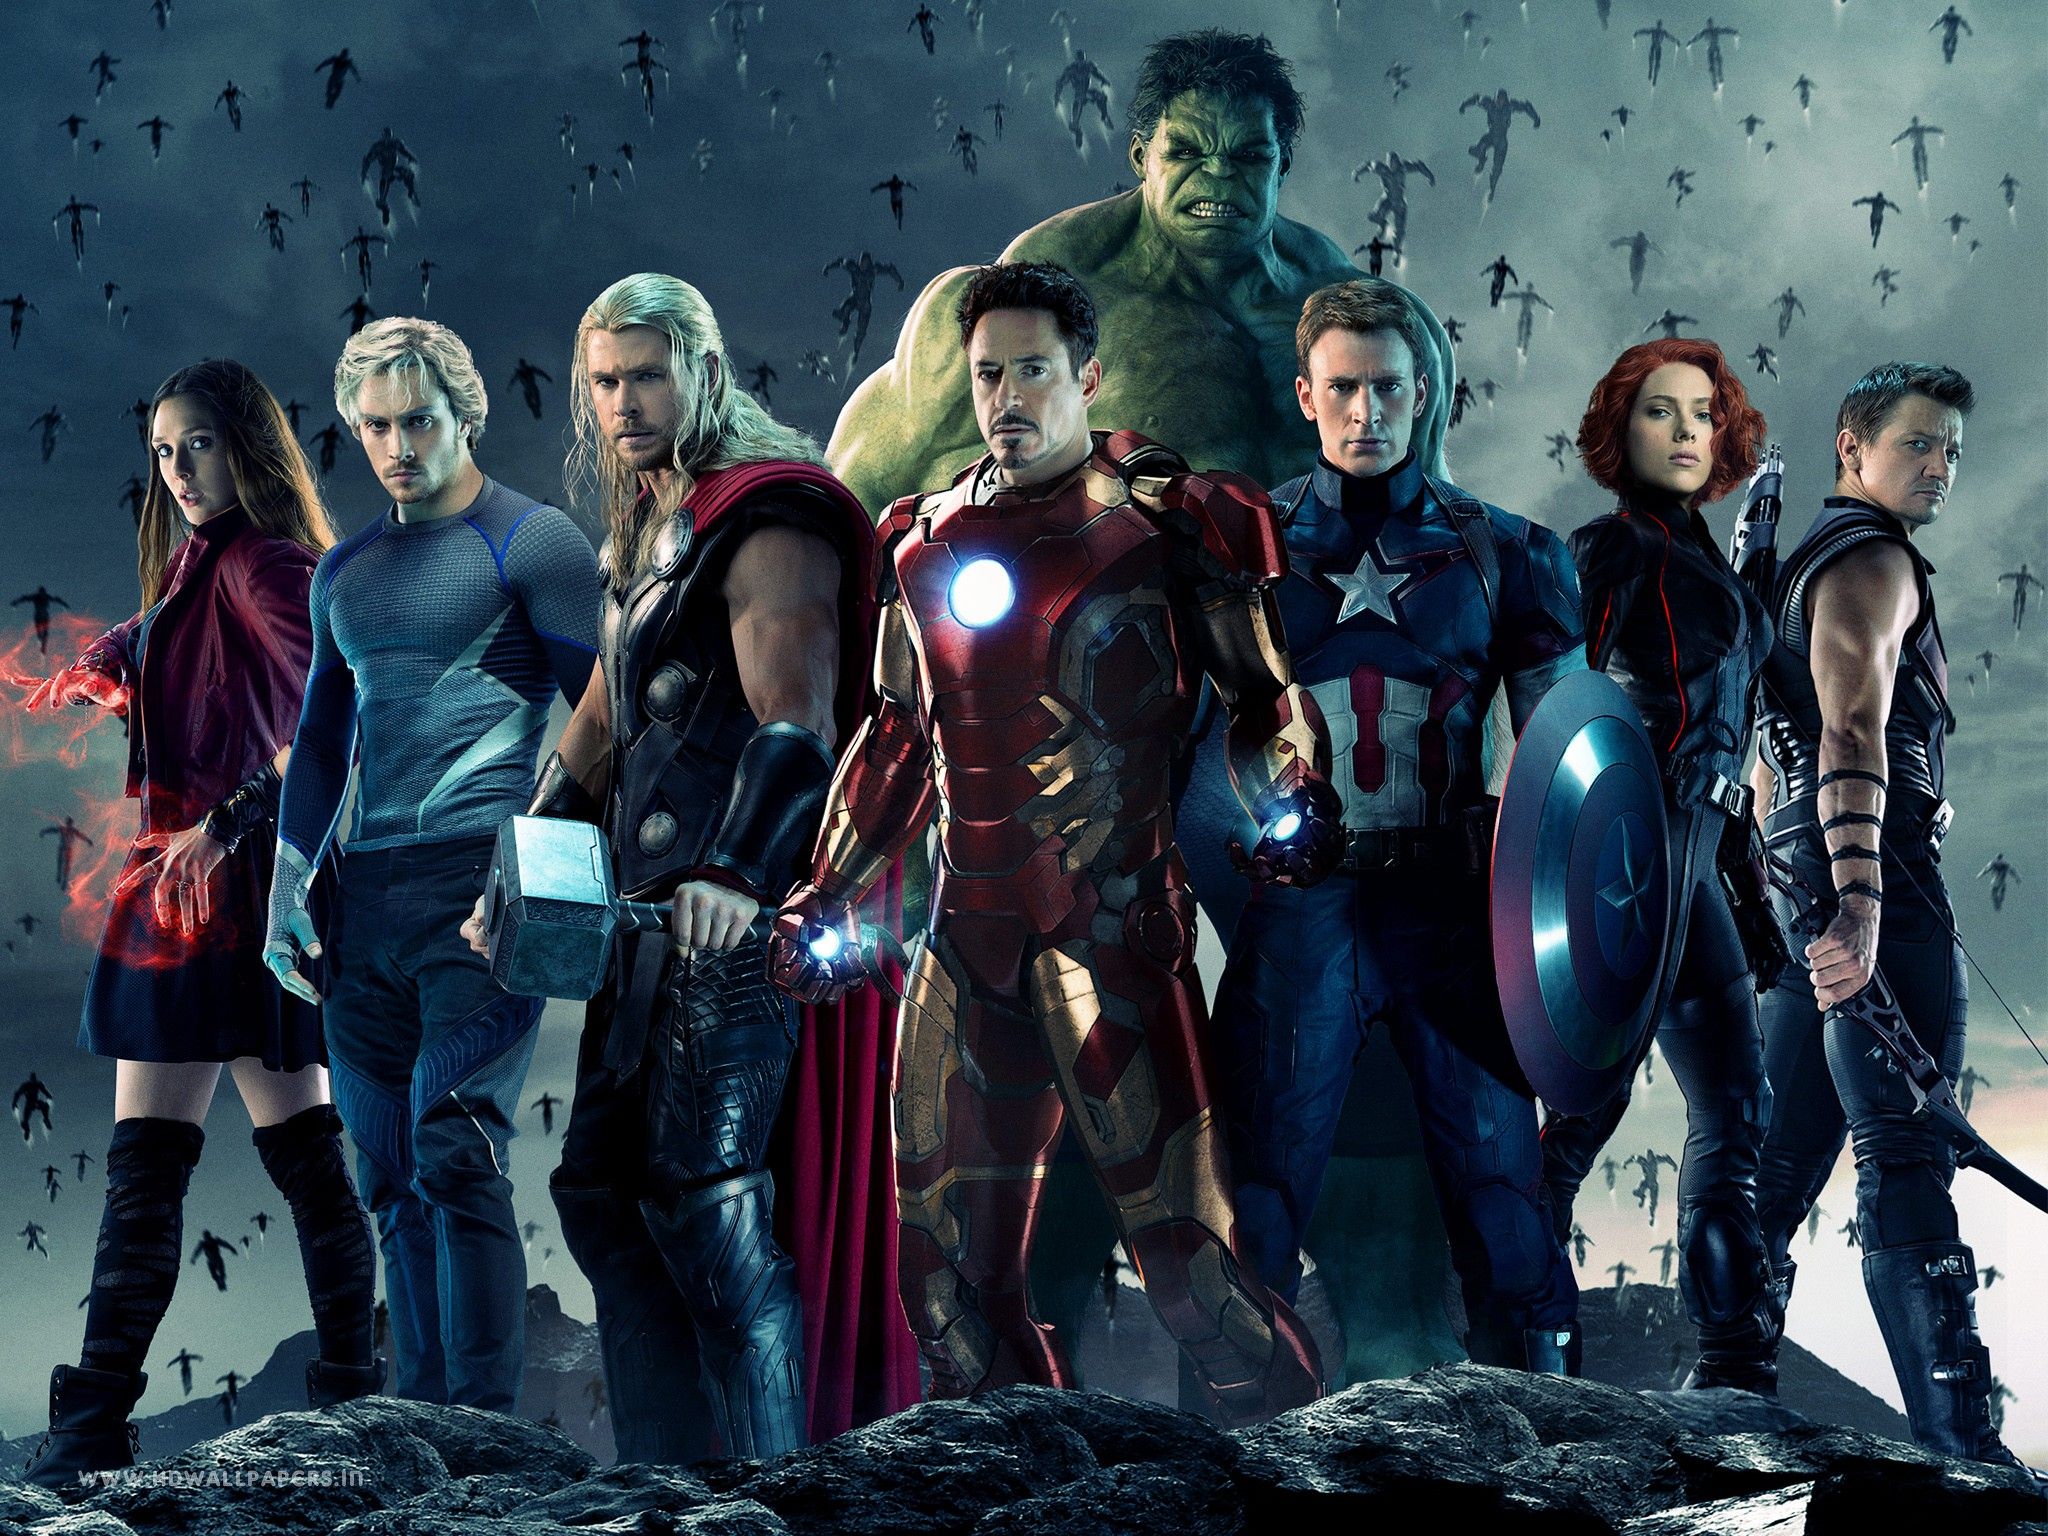 Avengers pic.jpg